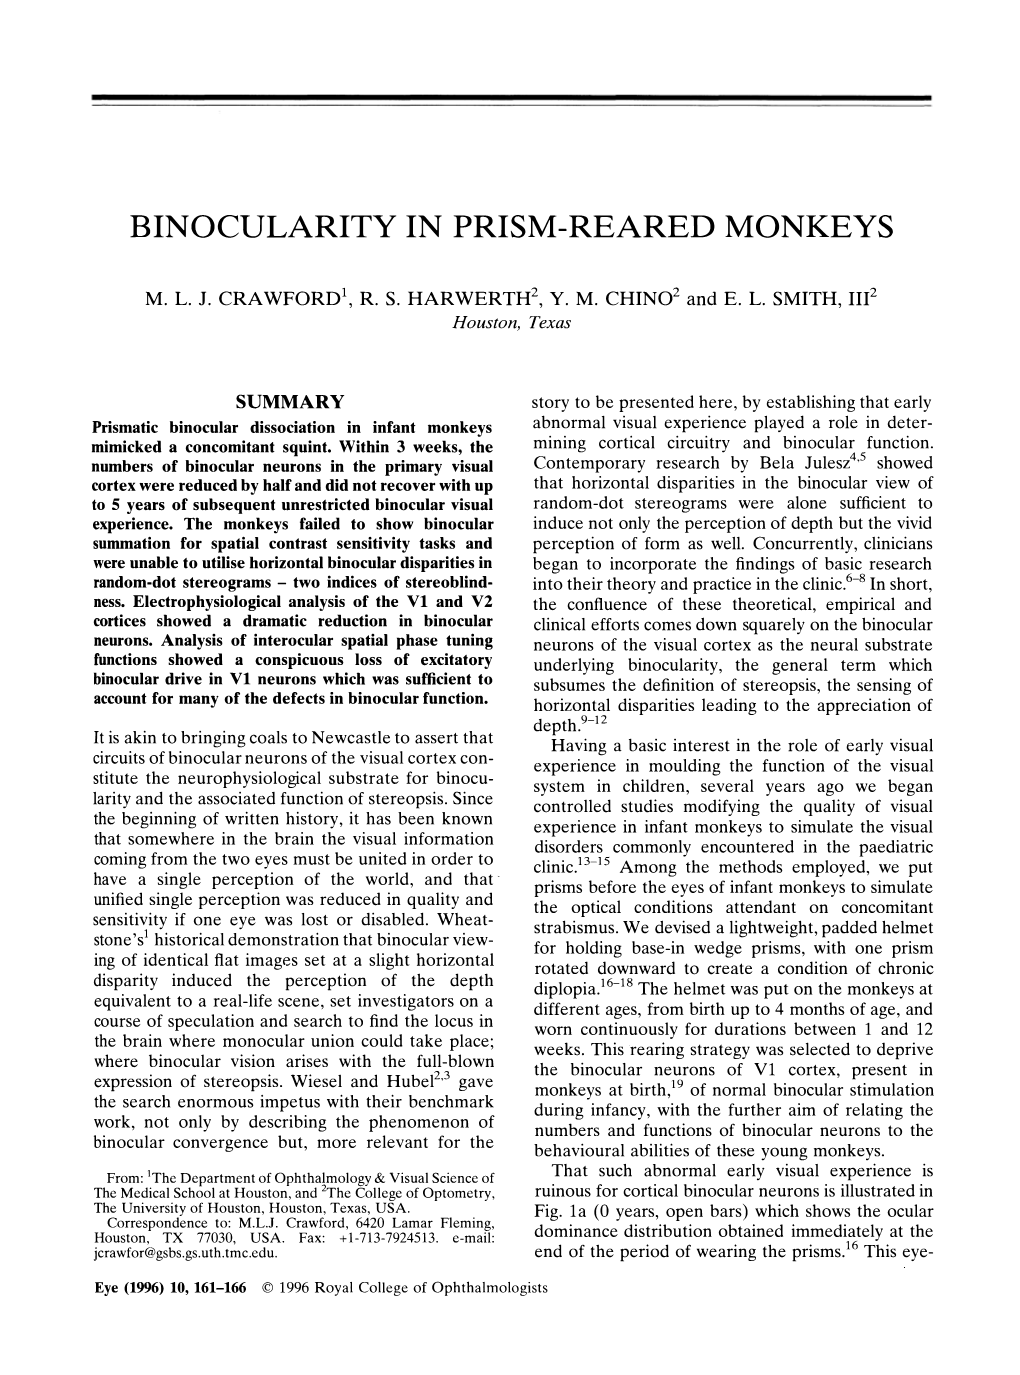 Binocularity in Prism-Reared Monkeys